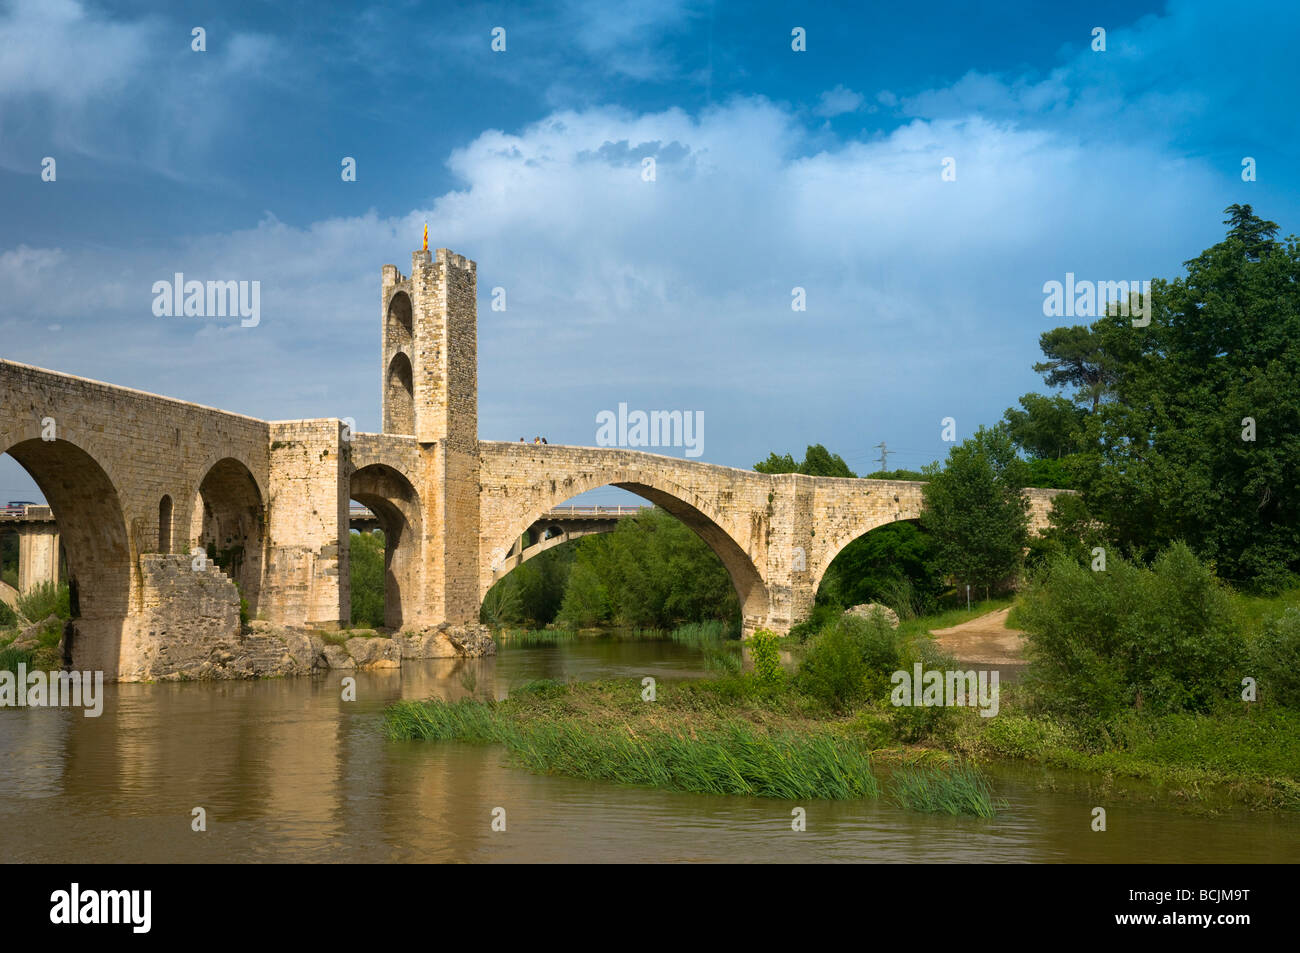 L'Espagne, la Catalogne (Catalunya), Besalu, Pont Vell (vieux pont) sur la rivière Fluvia Banque D'Images